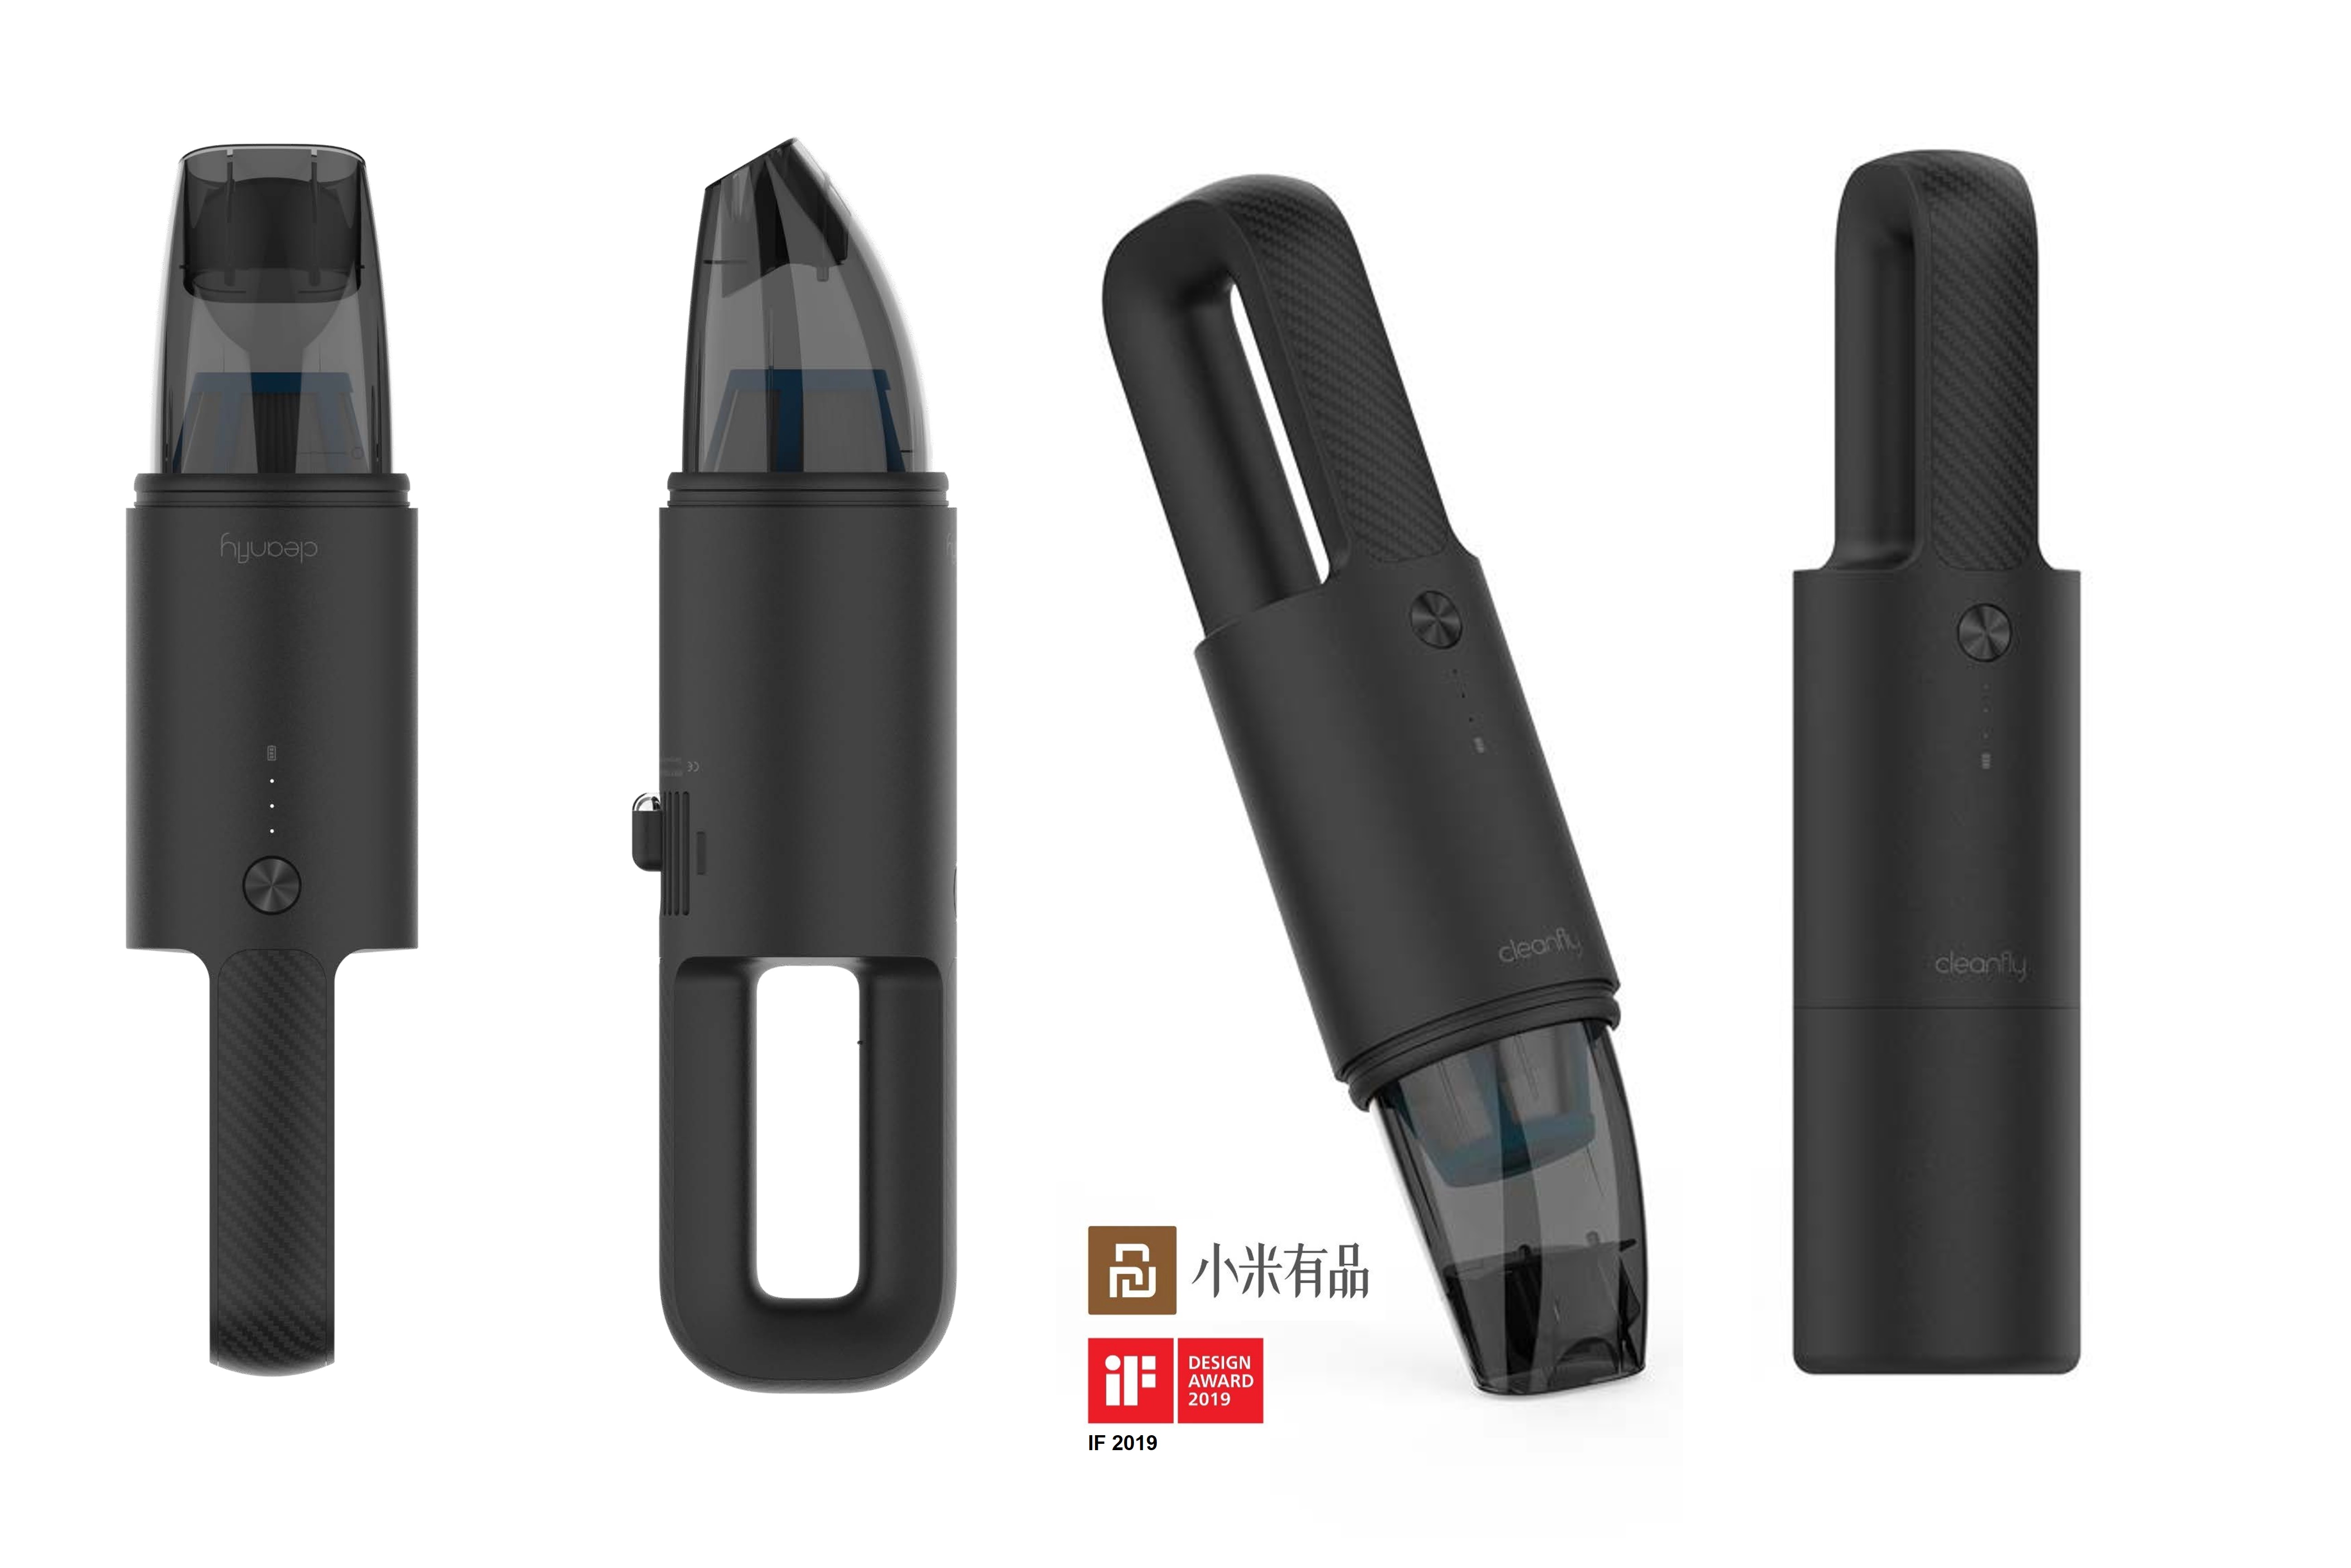 为中国Xiamo有限公司设计的手持式吸尘器产品。